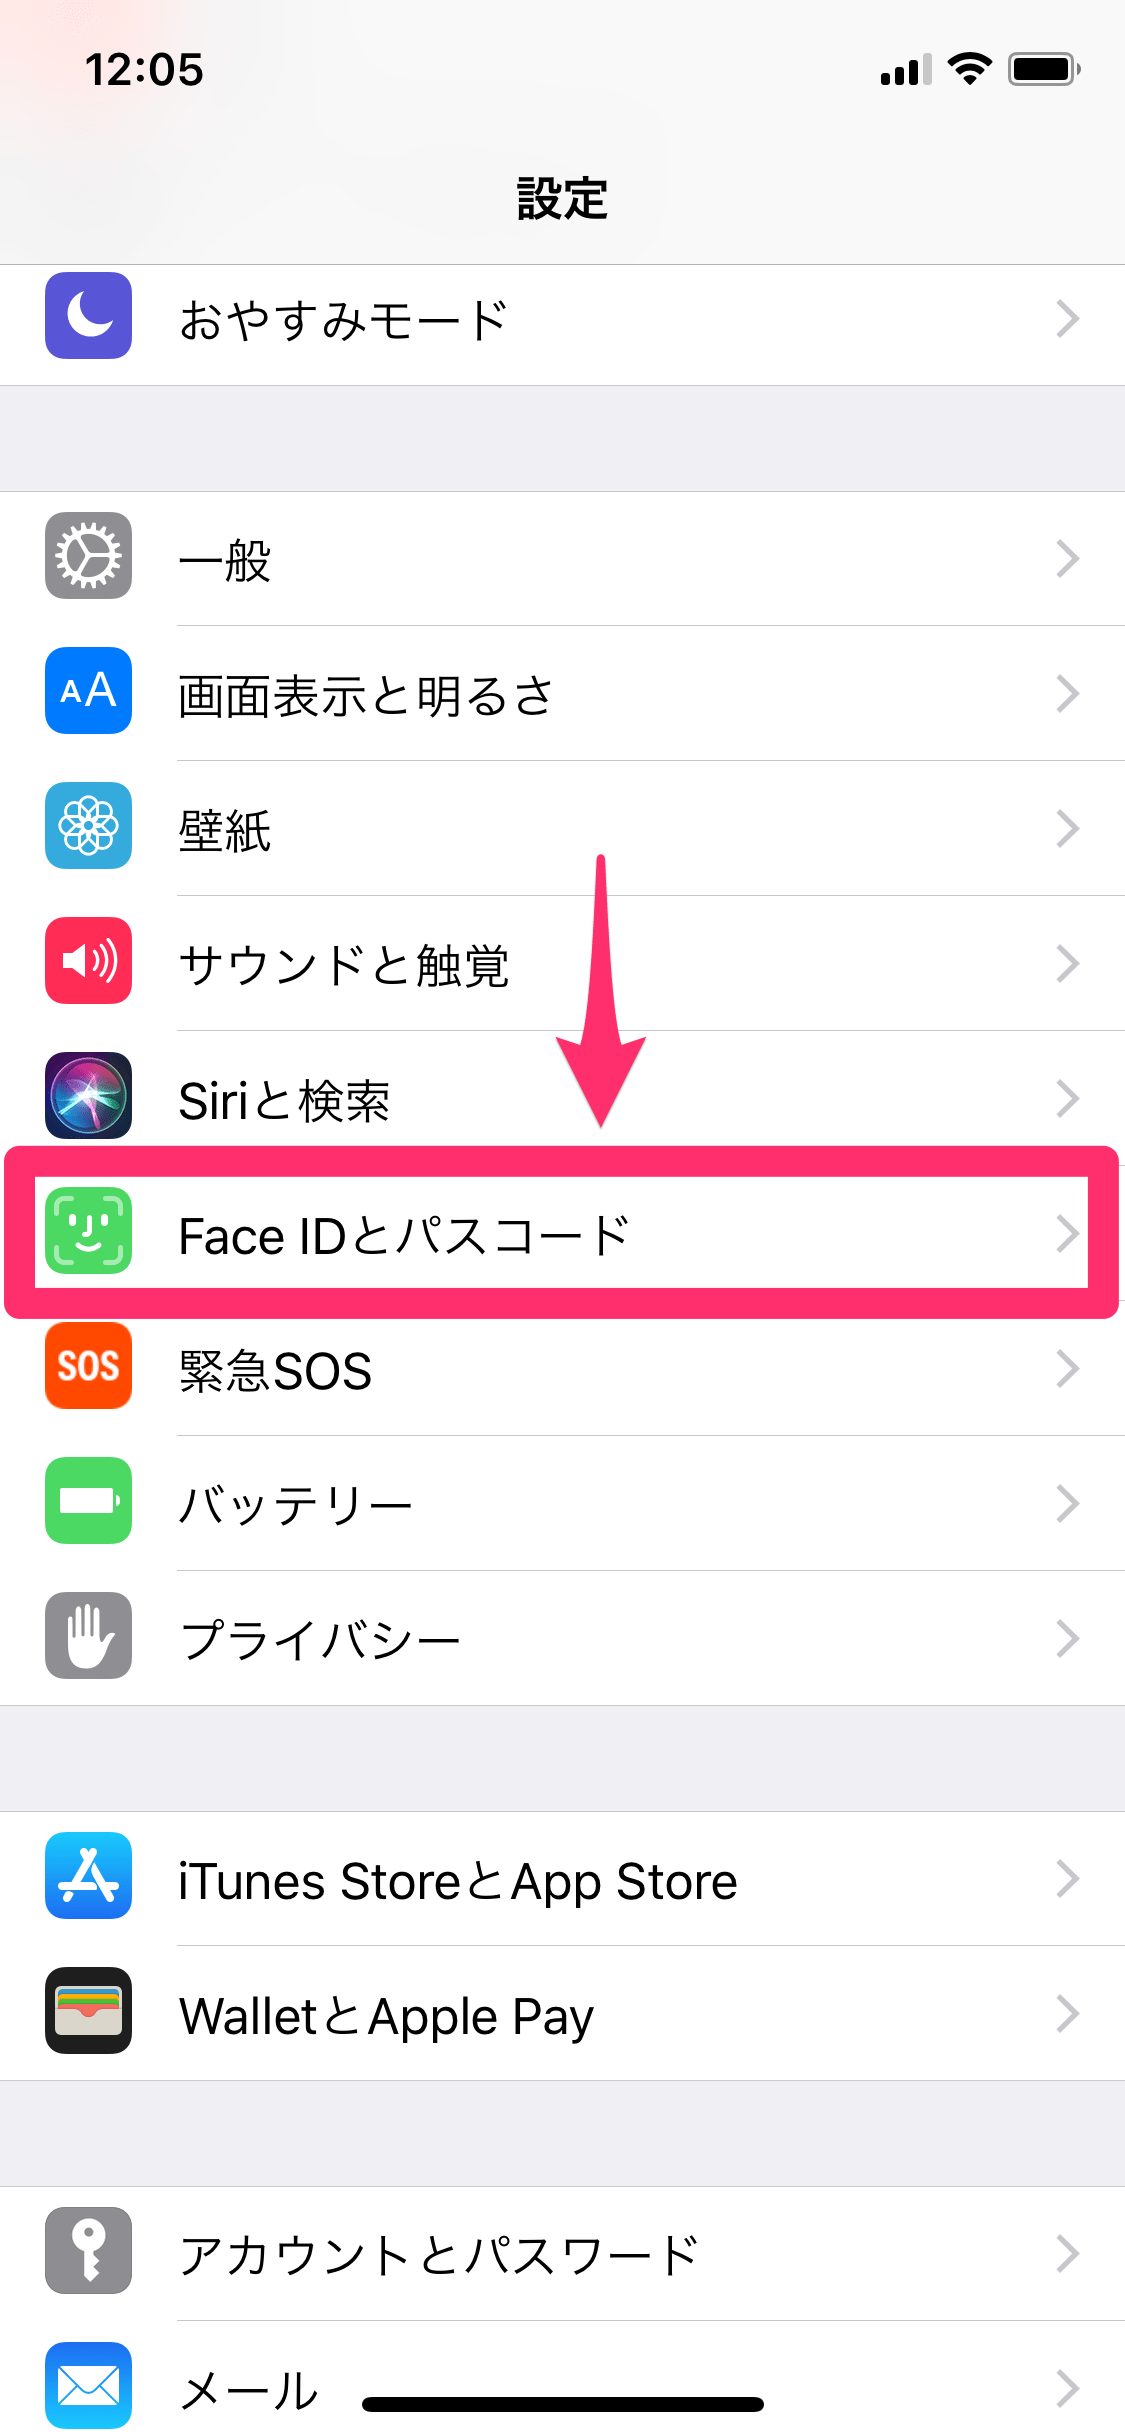 【iPhone X】顔認証機能「Face ID」の設定と使い方。ロック解除やアプリのダウンロードが快適に！